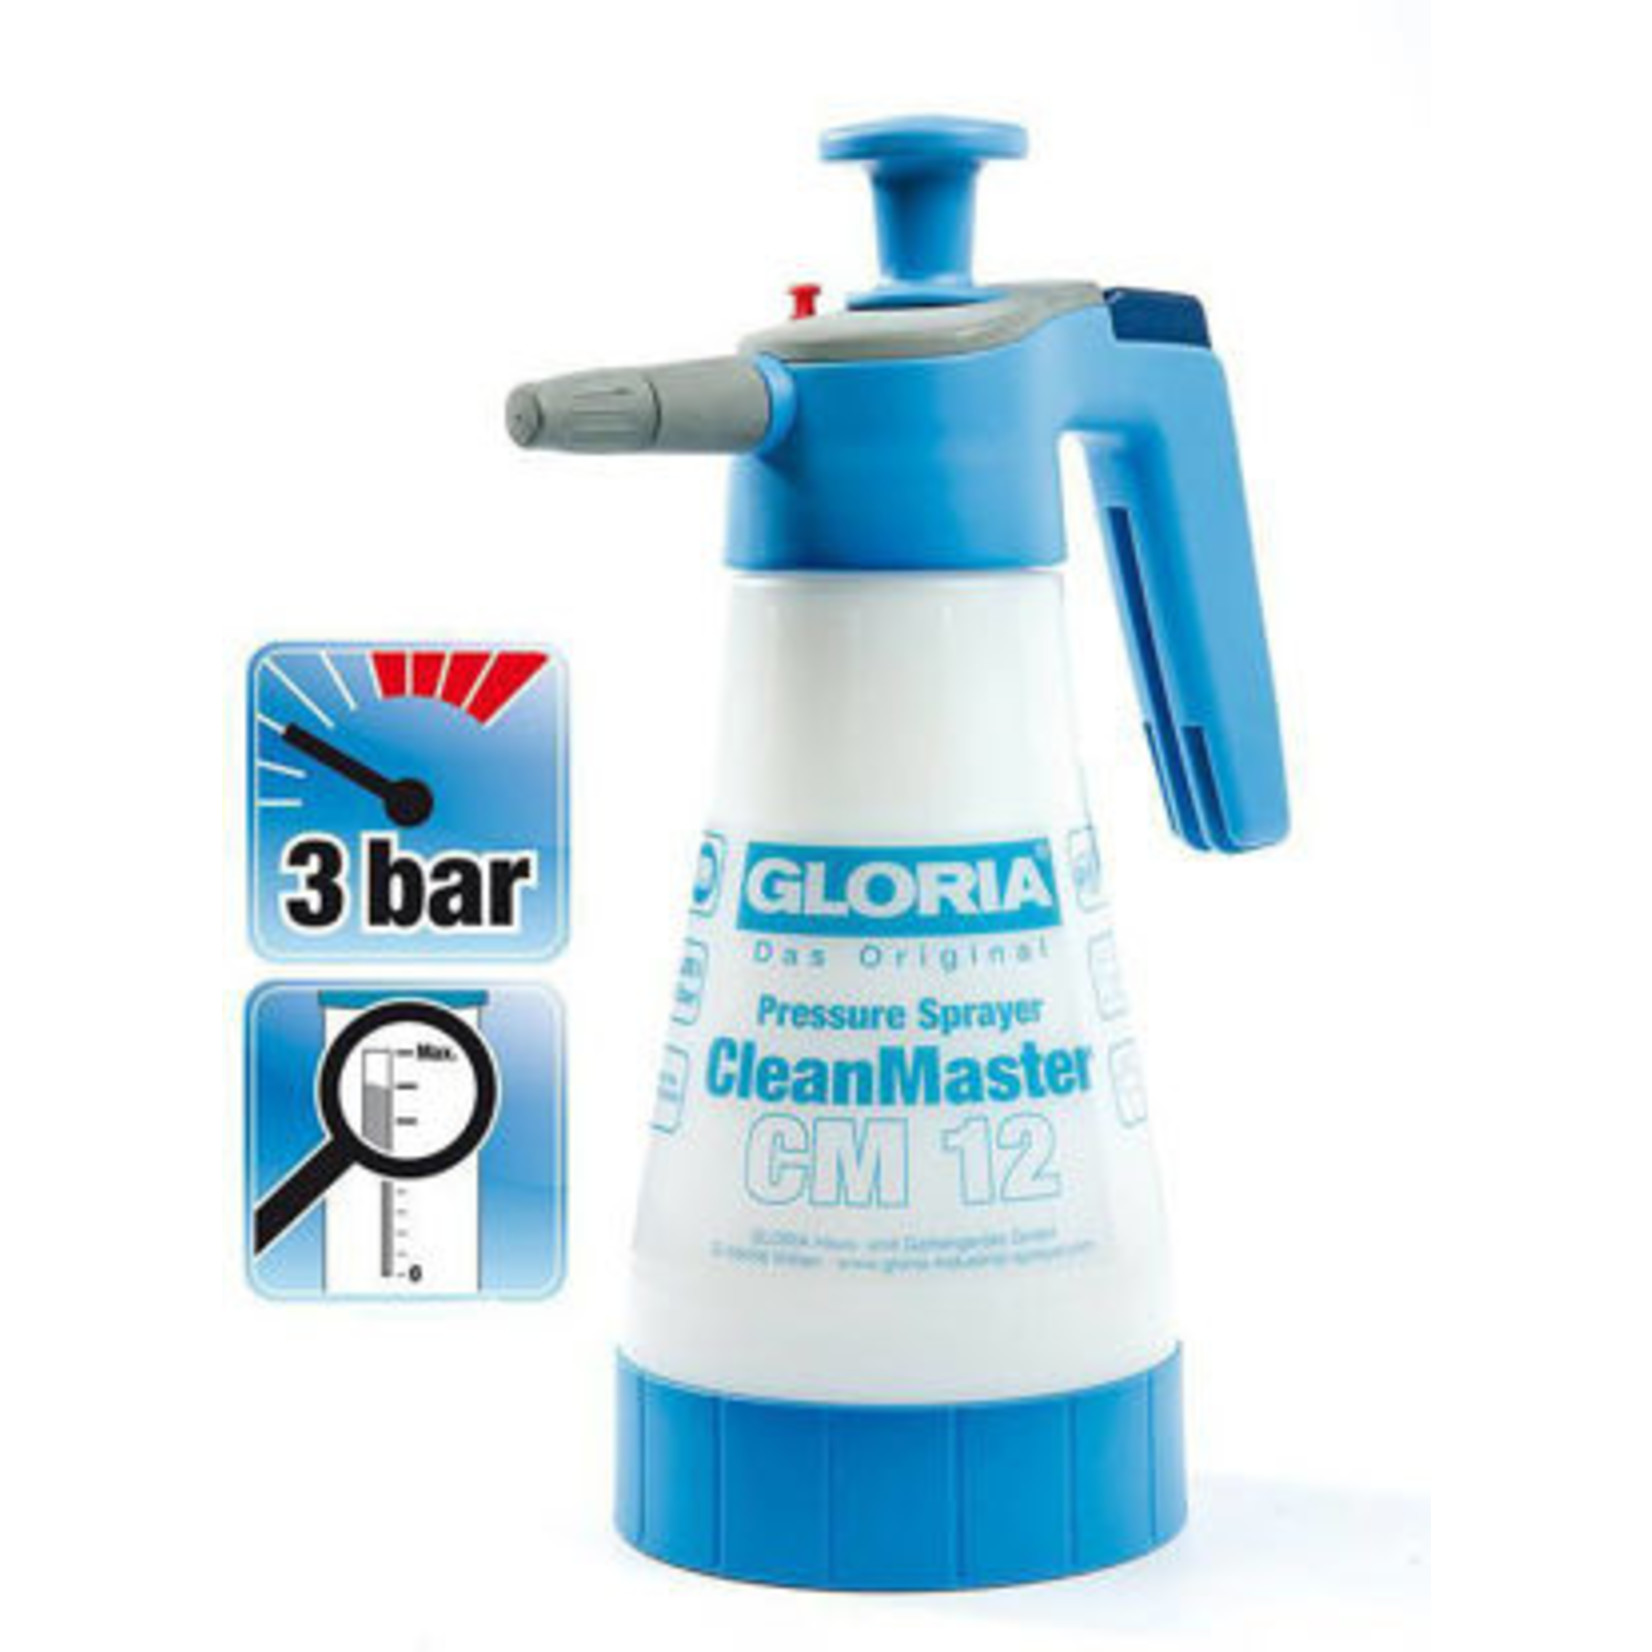 Hand-/druksproeier Clean Master CM12 Gloria, 1.25-liter